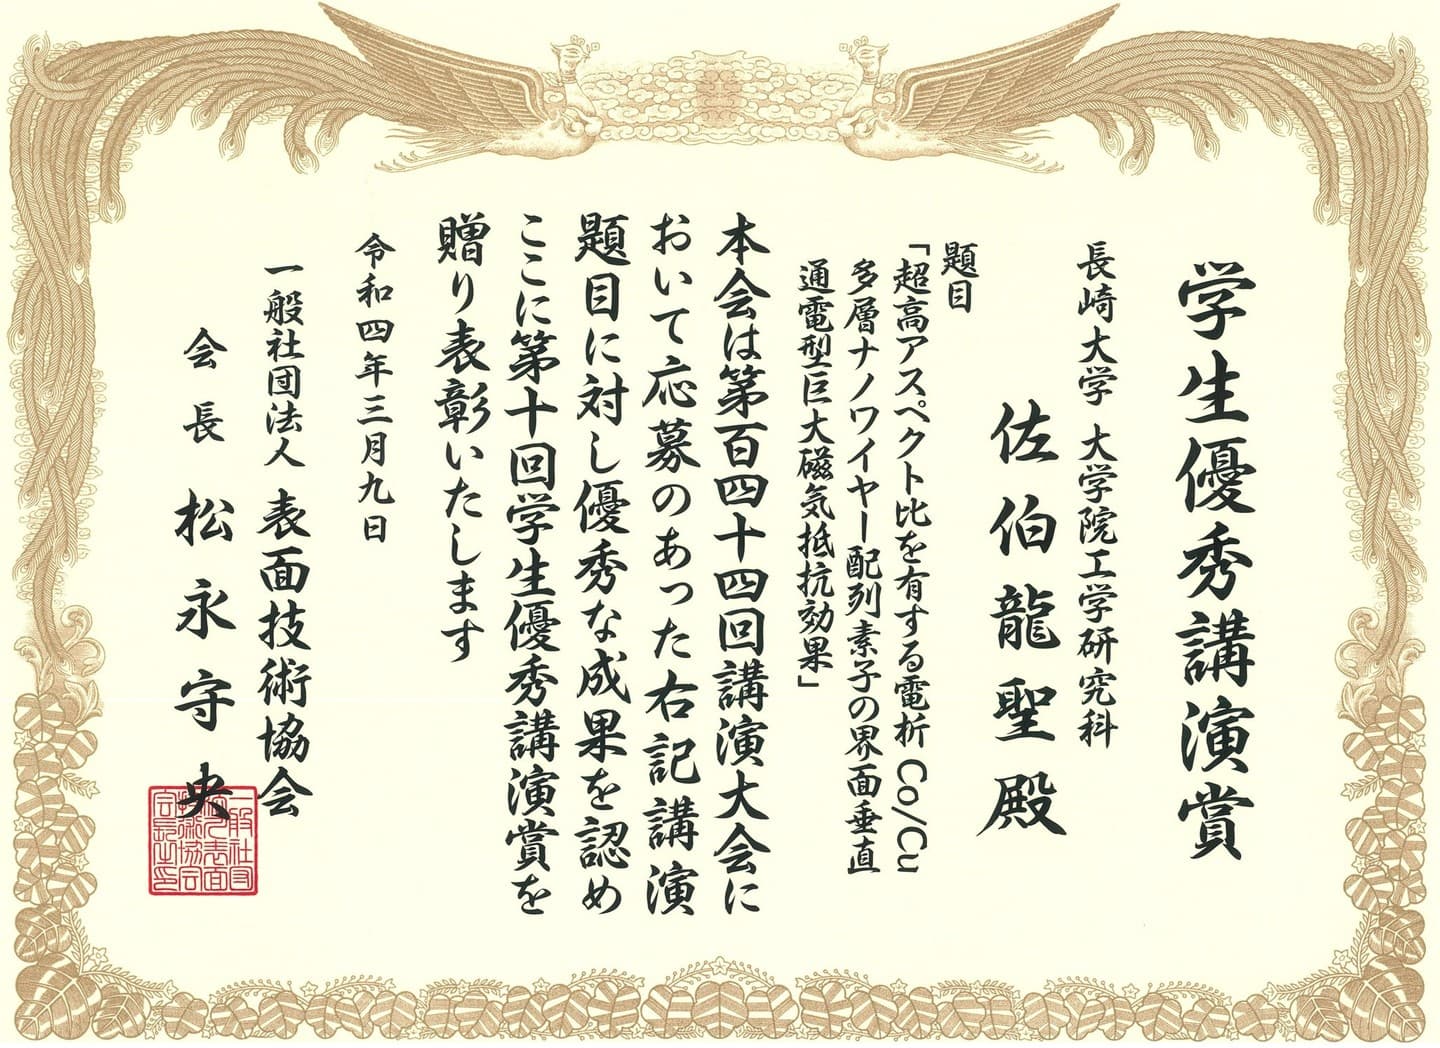 佐伯龍聖君(日本学術振興会DC1)が、応用物理学会九州支部学術講演会において、発表奨励賞を受賞しました。2021/12/5